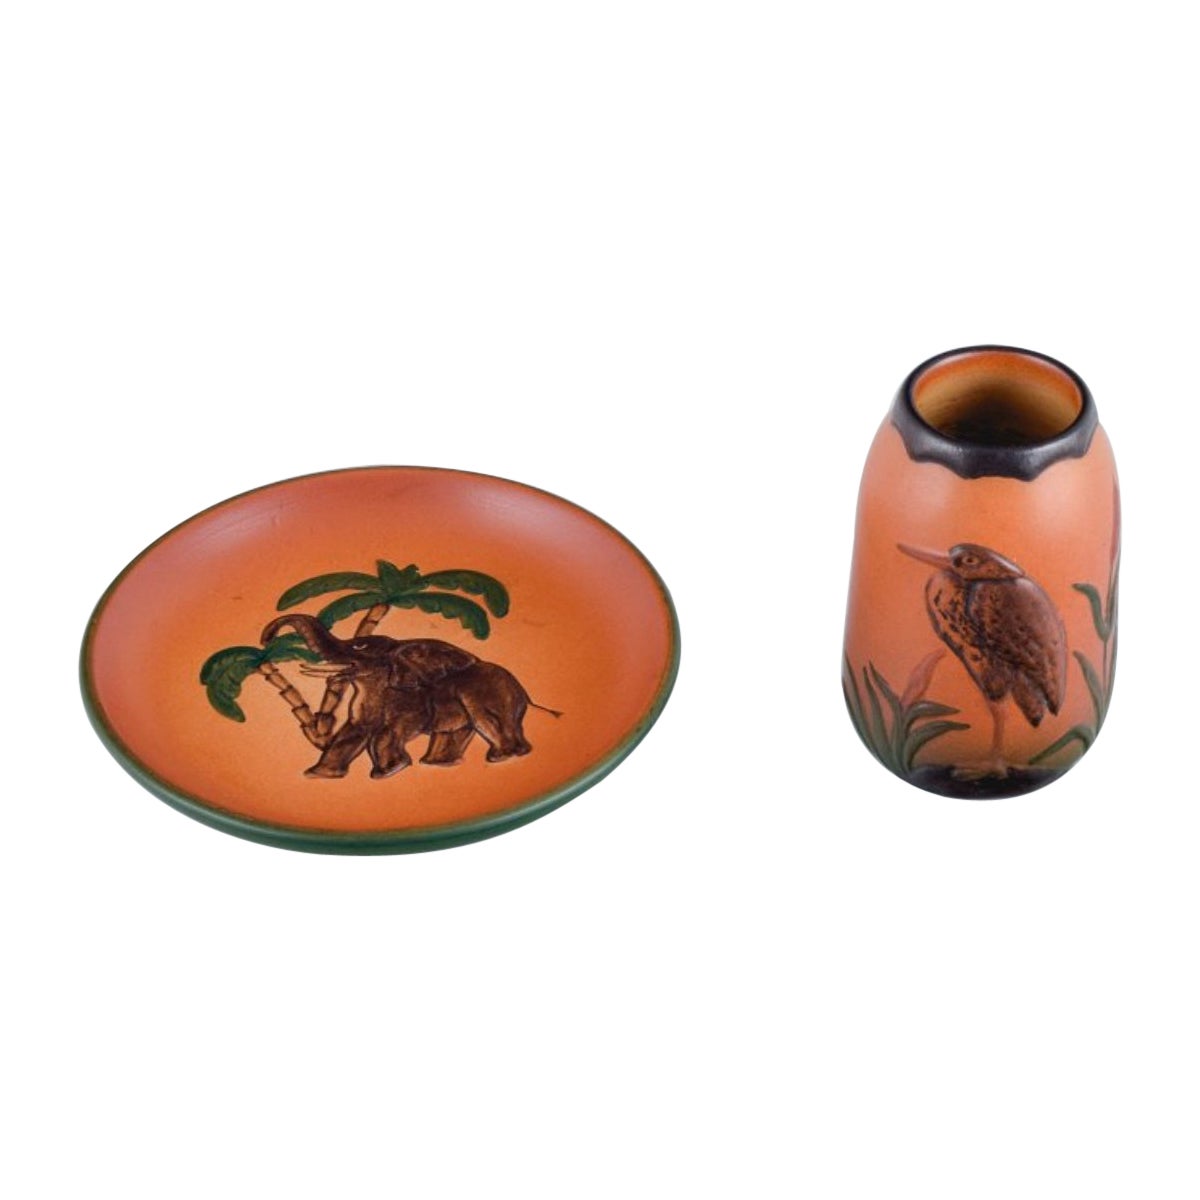 Ipsens Enke, Ceramic Vase and a Ceramic Dish, Malibu and Elephant Motif